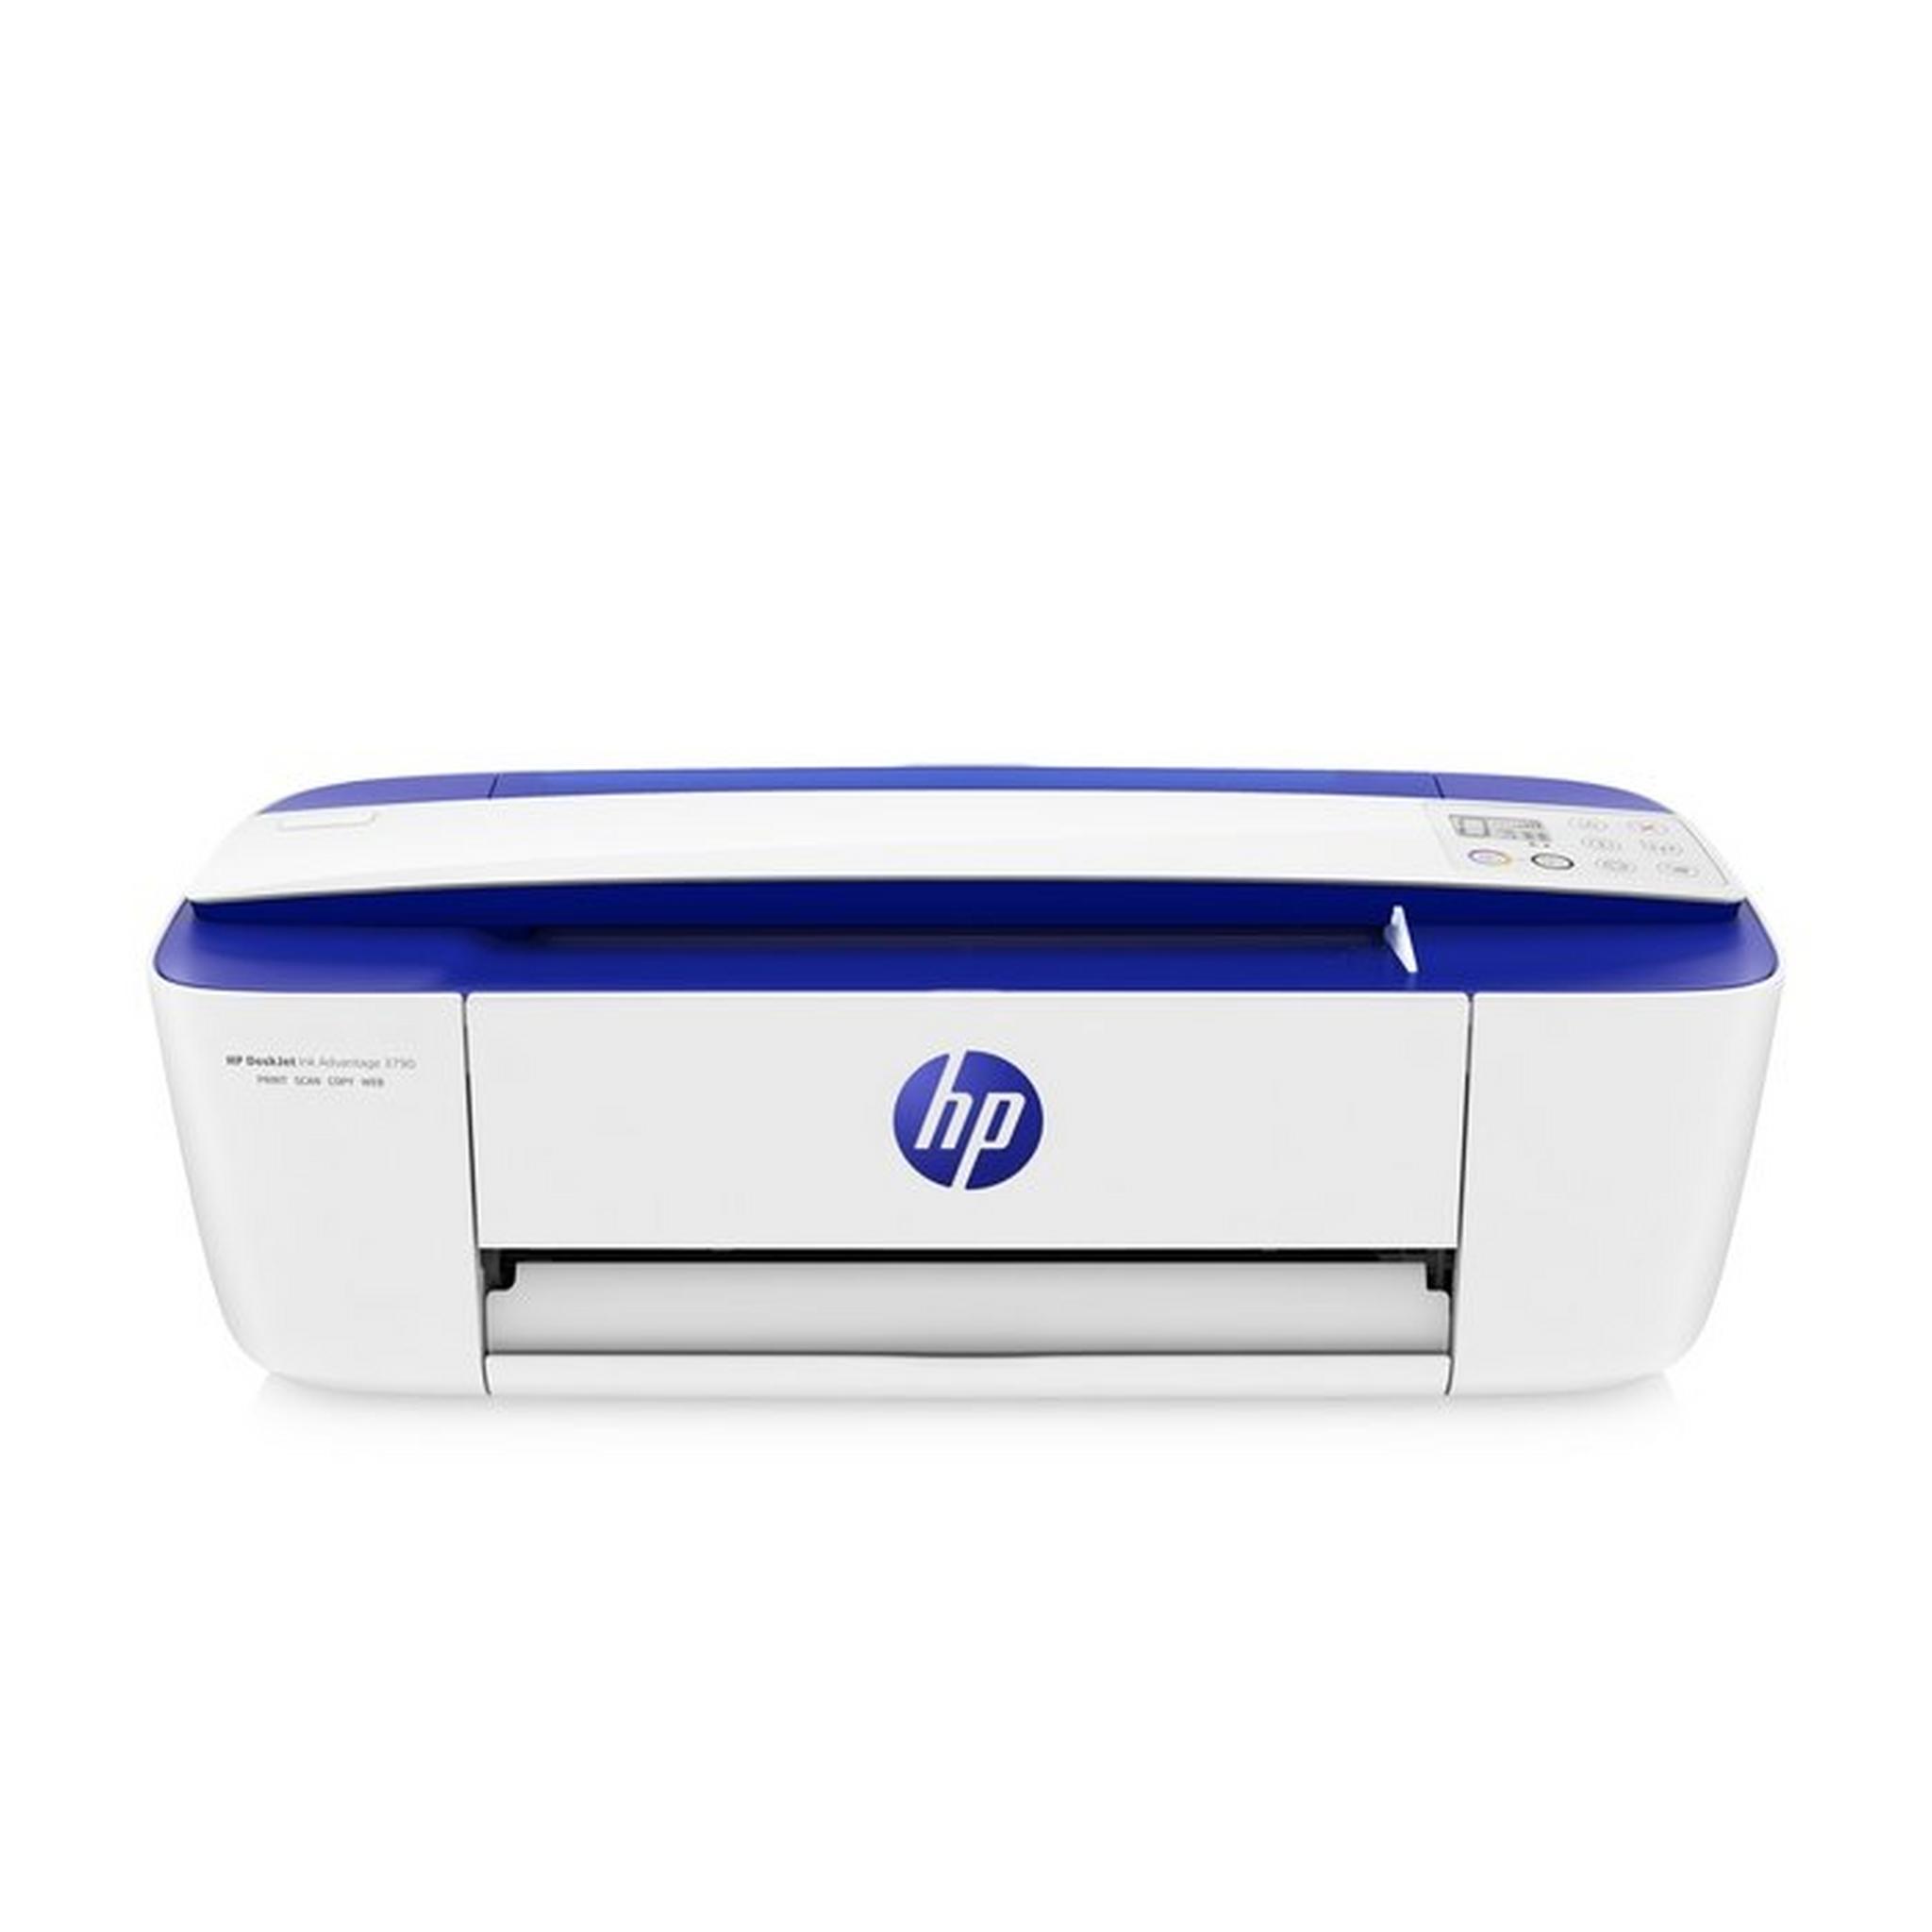 HP DeskJet Ink Advantage 3790 All-in-One Printer - T8W47C